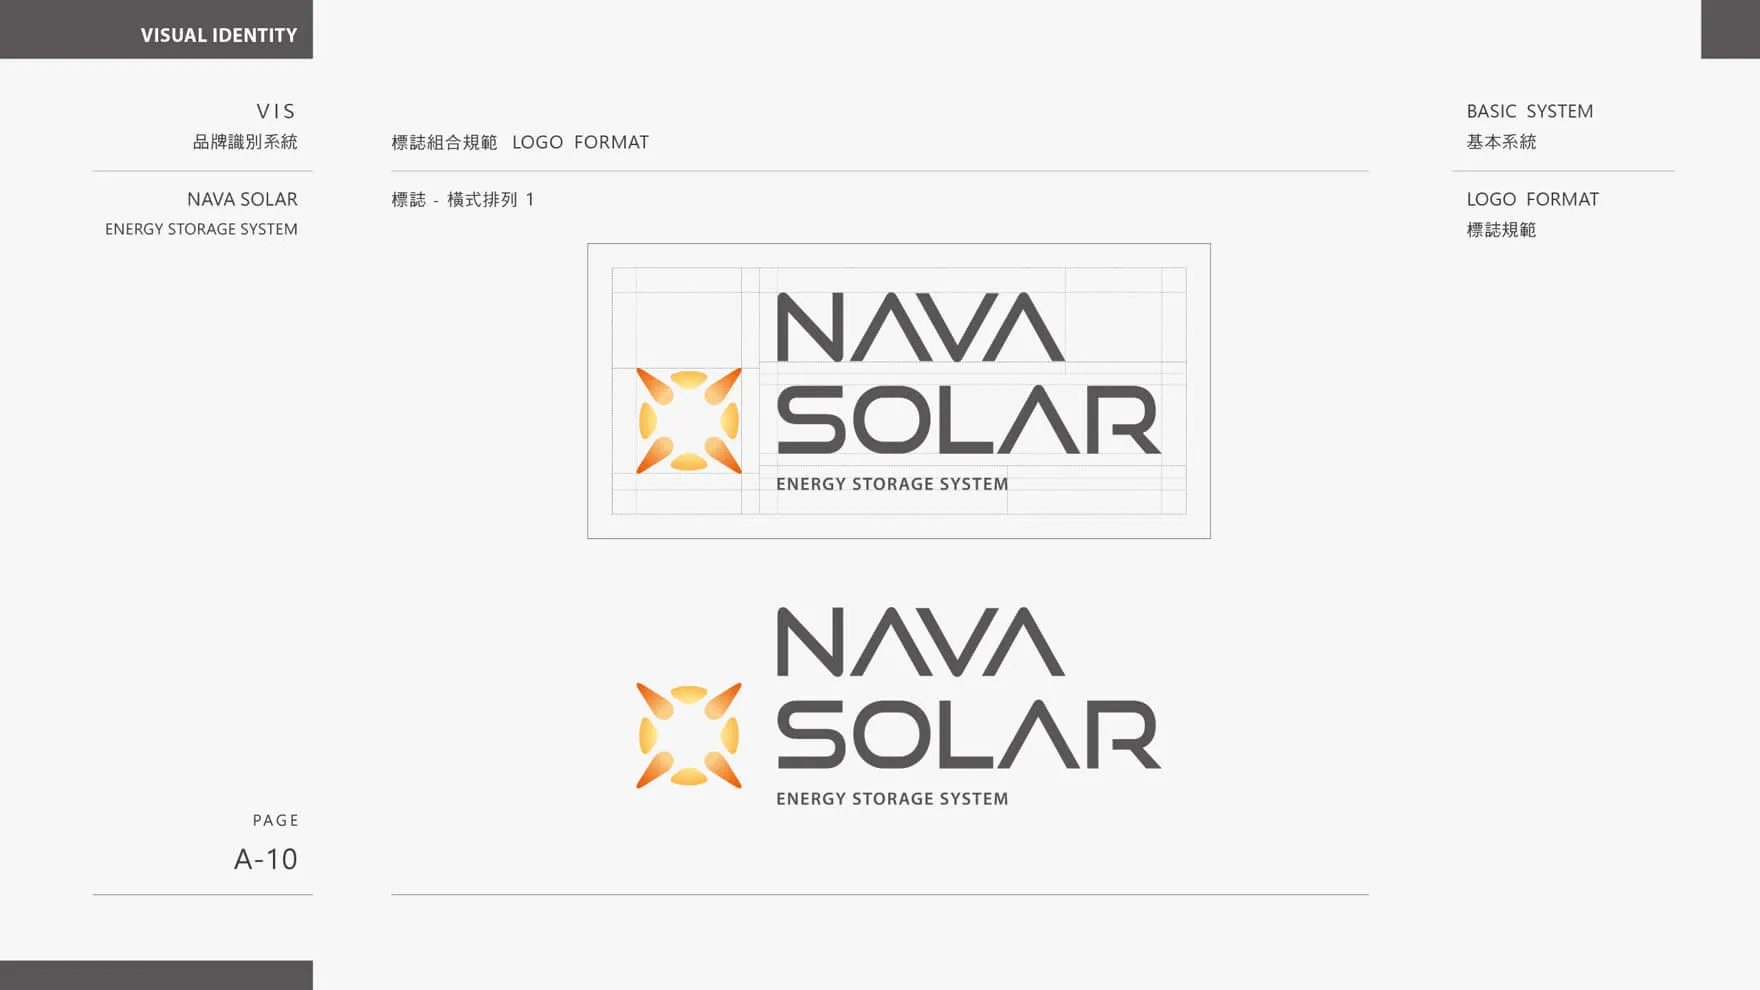 太陽能光電存儲品牌LOGO規範橫式